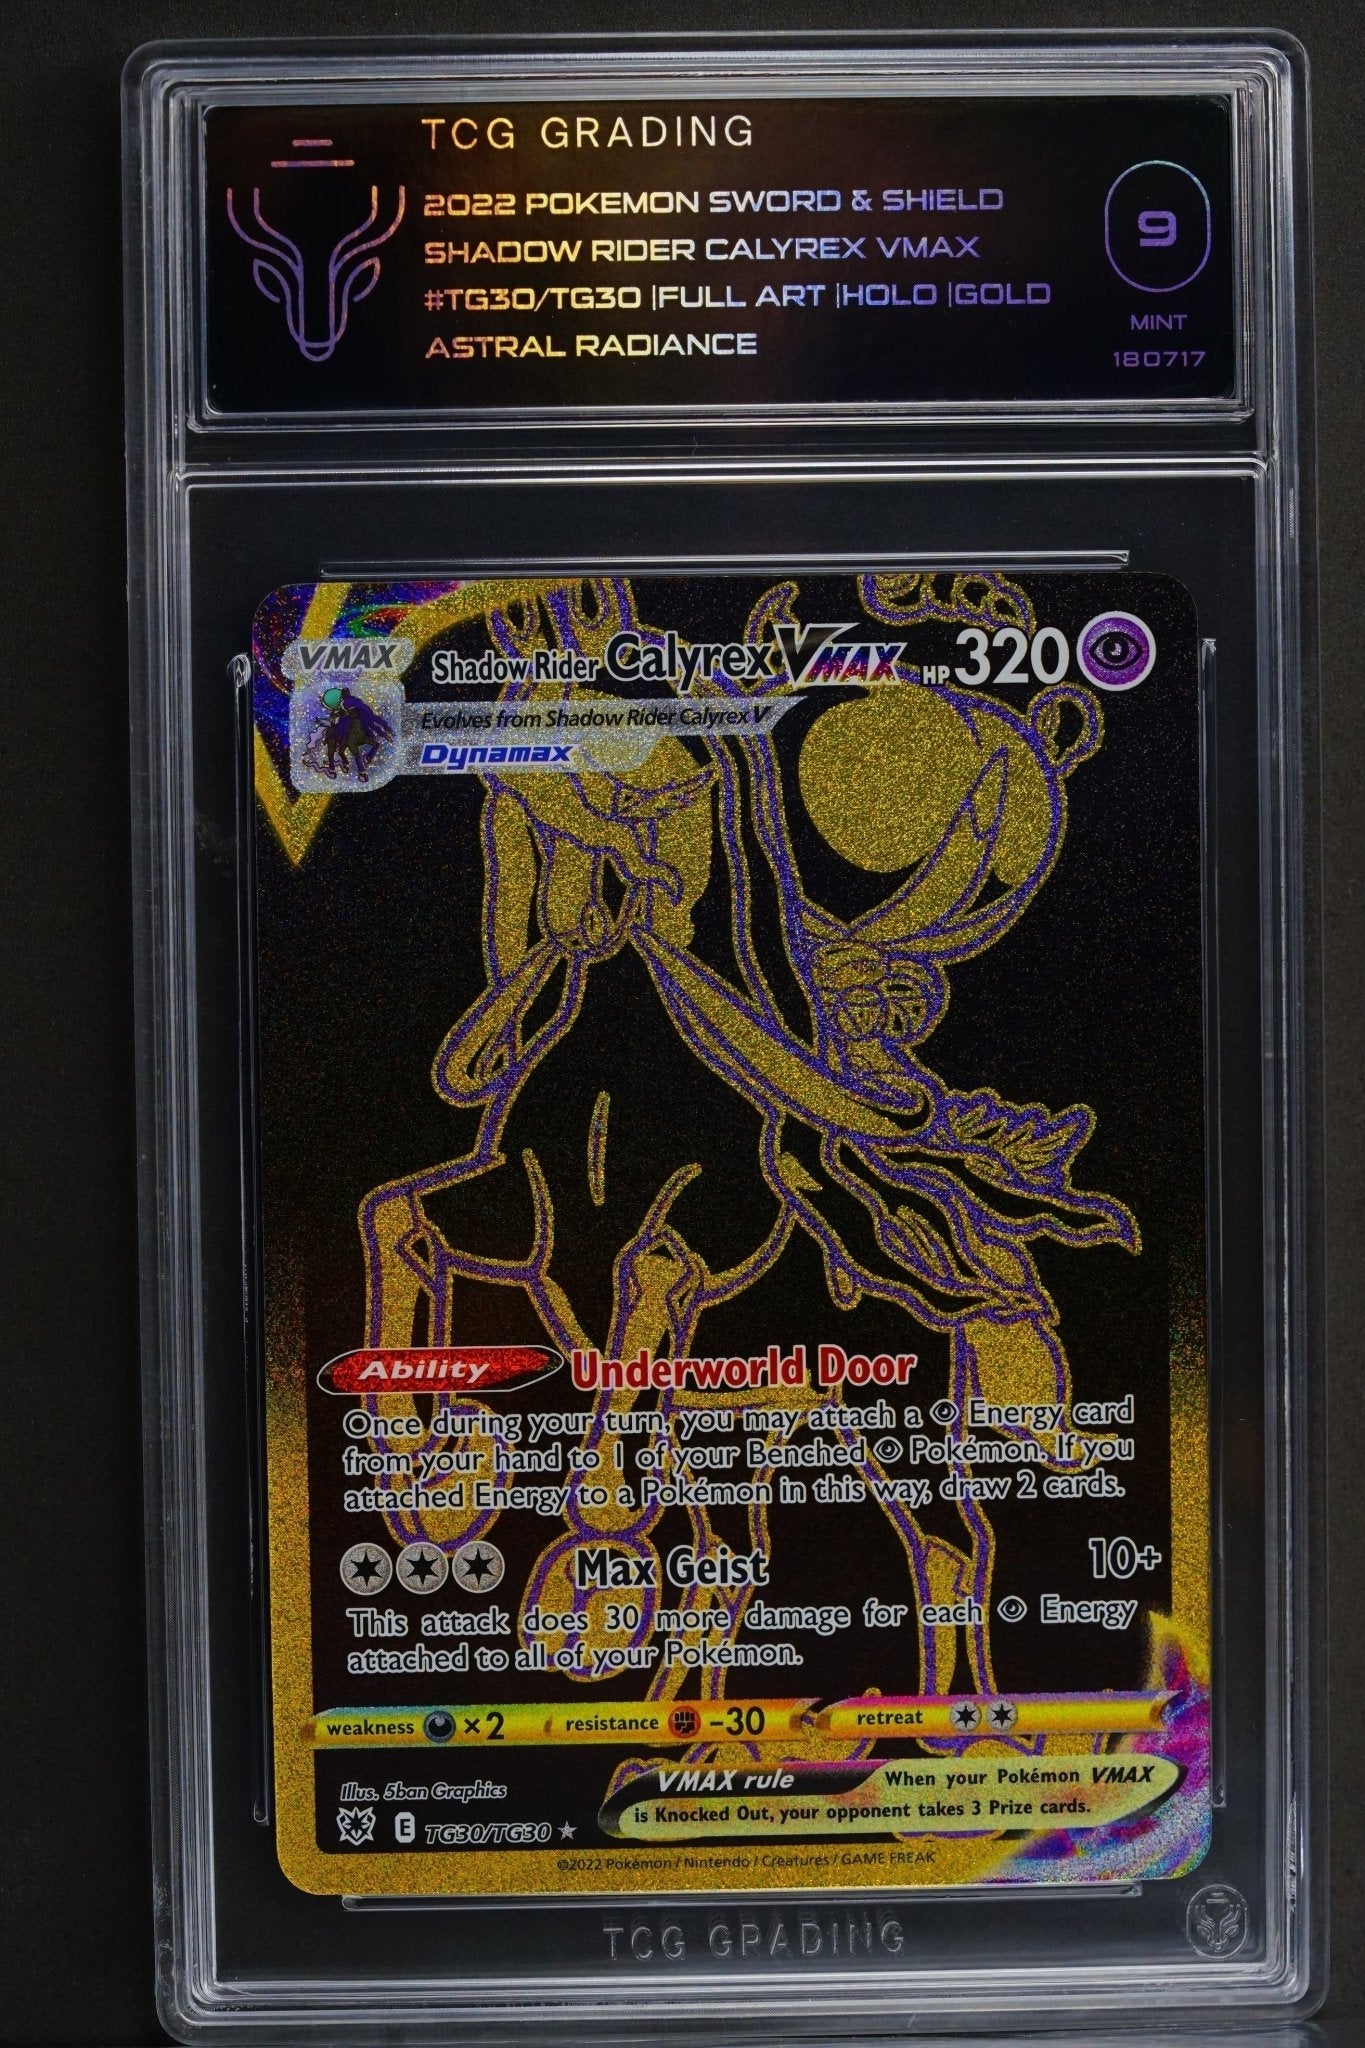 Pokemon TCG: Cayrex VMAX TG30/TG30 MINT 9 - THE CARD SPOT PTY LTD.GradedPokémon